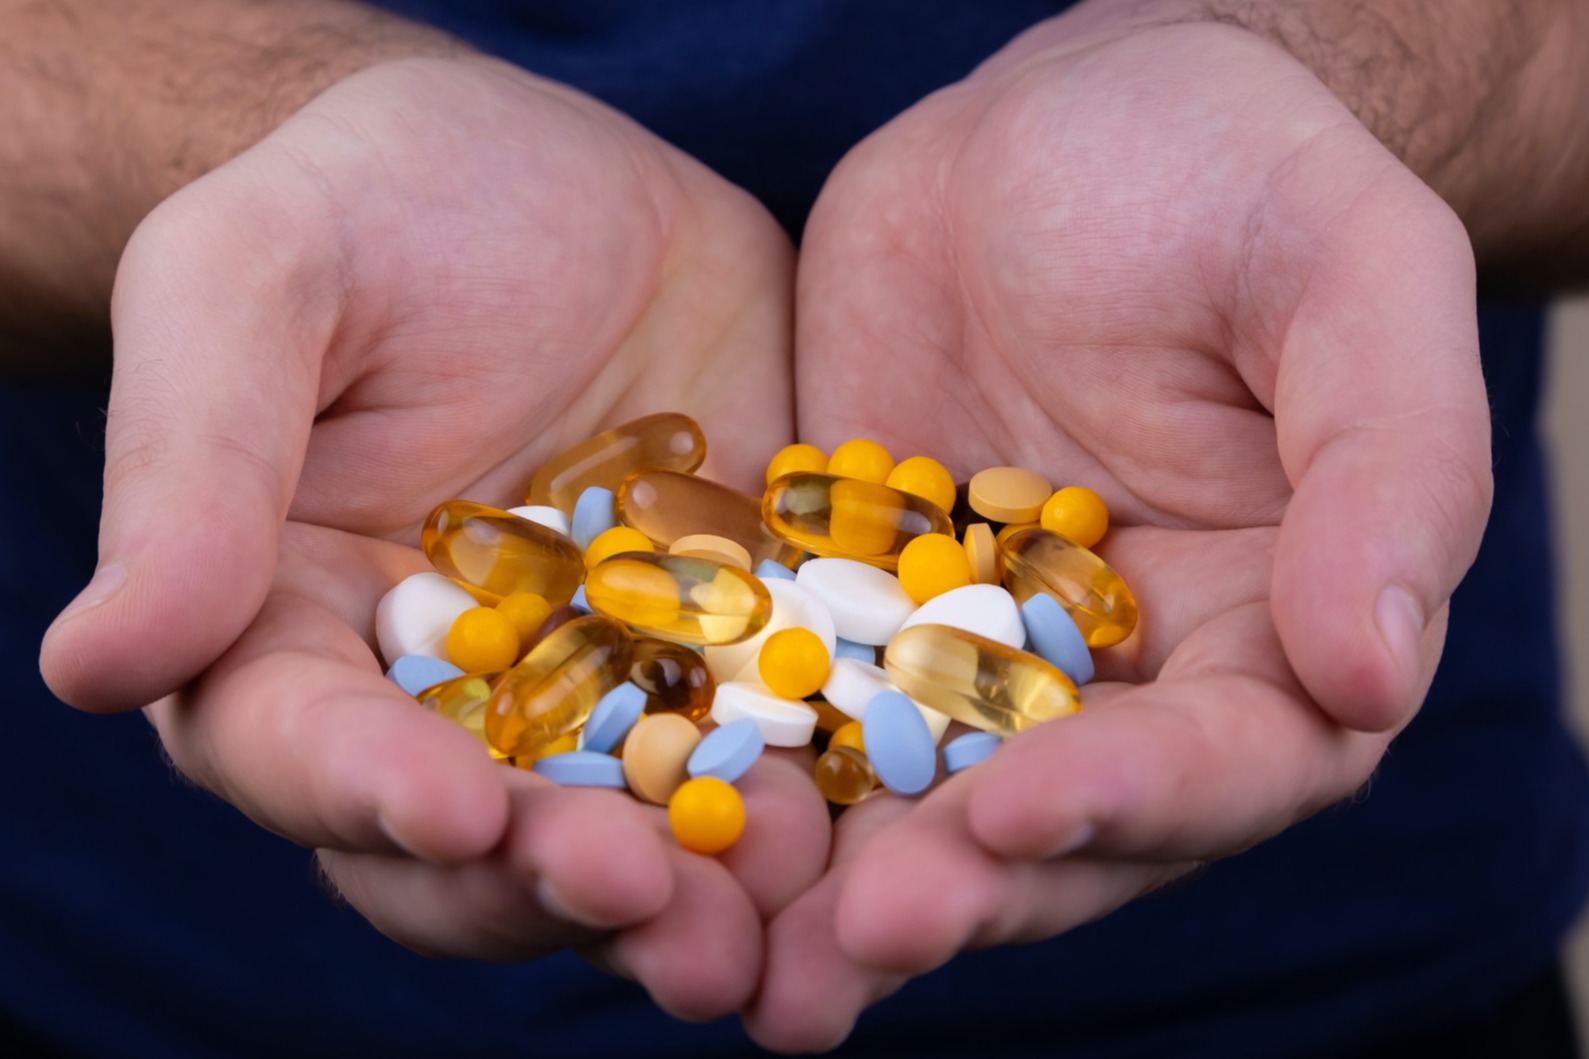 抗生素抗藥性成全球威脅
導致1年內127萬人喪命